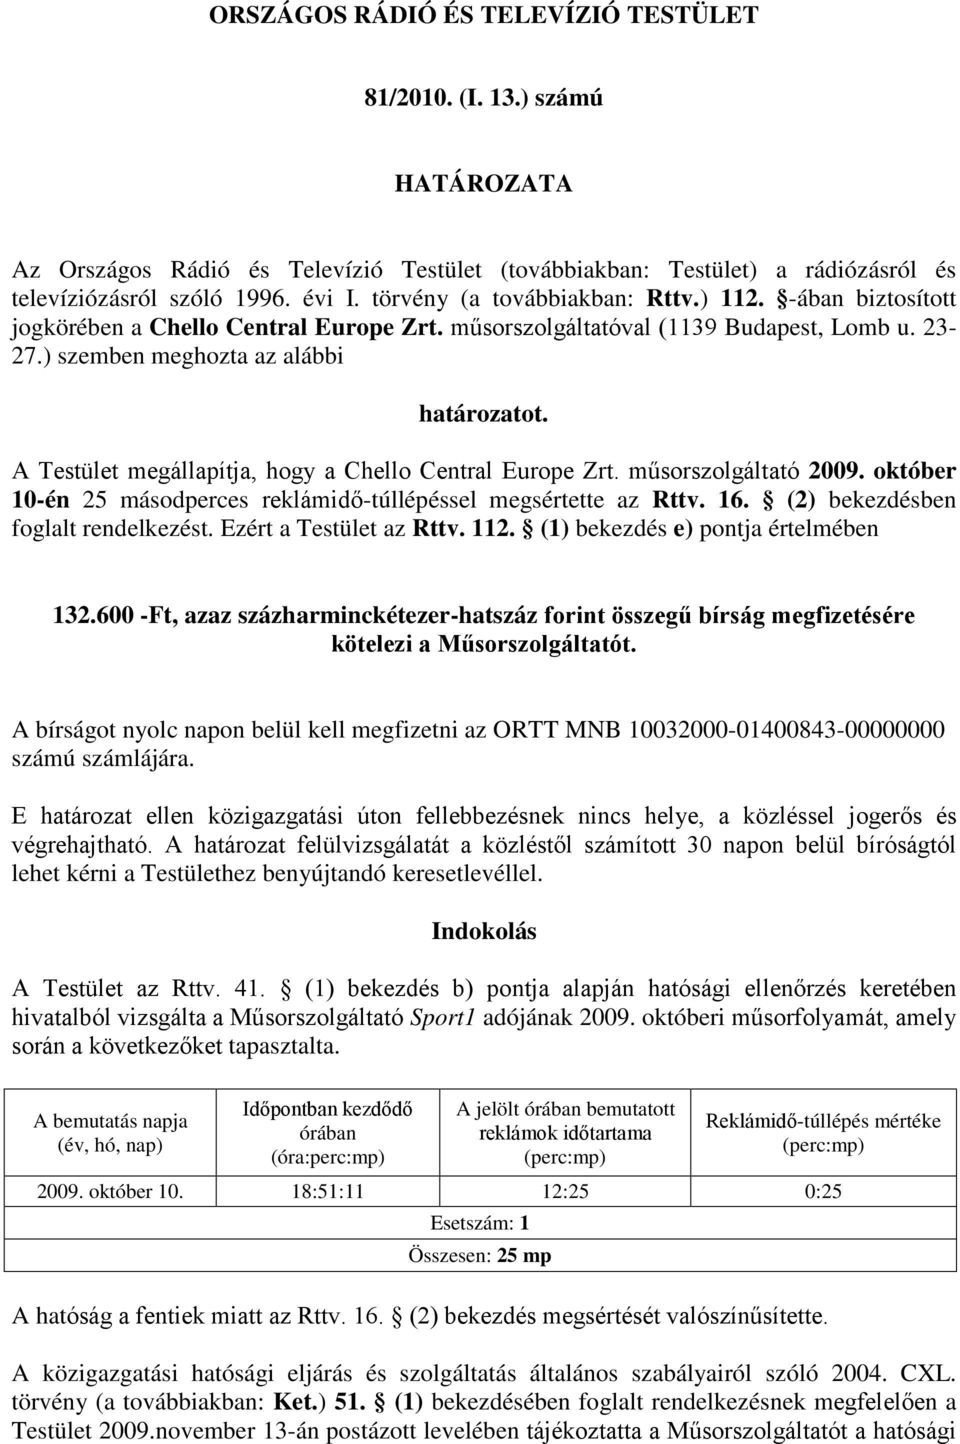 A Testület megállapítja, hogy a Chello Central Europe Zrt. műsorszolgáltató 2009. október 10-én 25 másodperces reklámidő-túllépéssel megsértette az Rttv. 16. (2) bekezdésben foglalt rendelkezést.